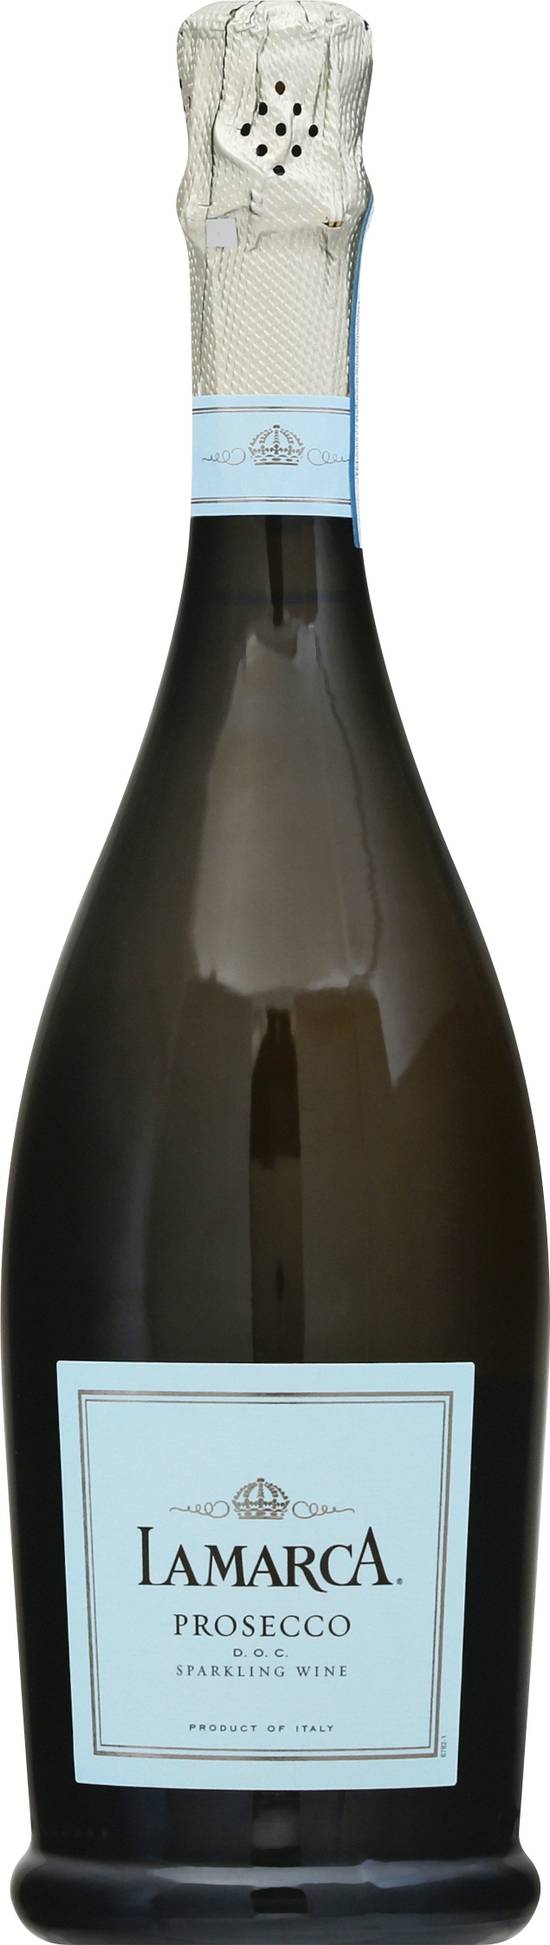 Lamarca Prosecco Sparkling Wine (750 ml)